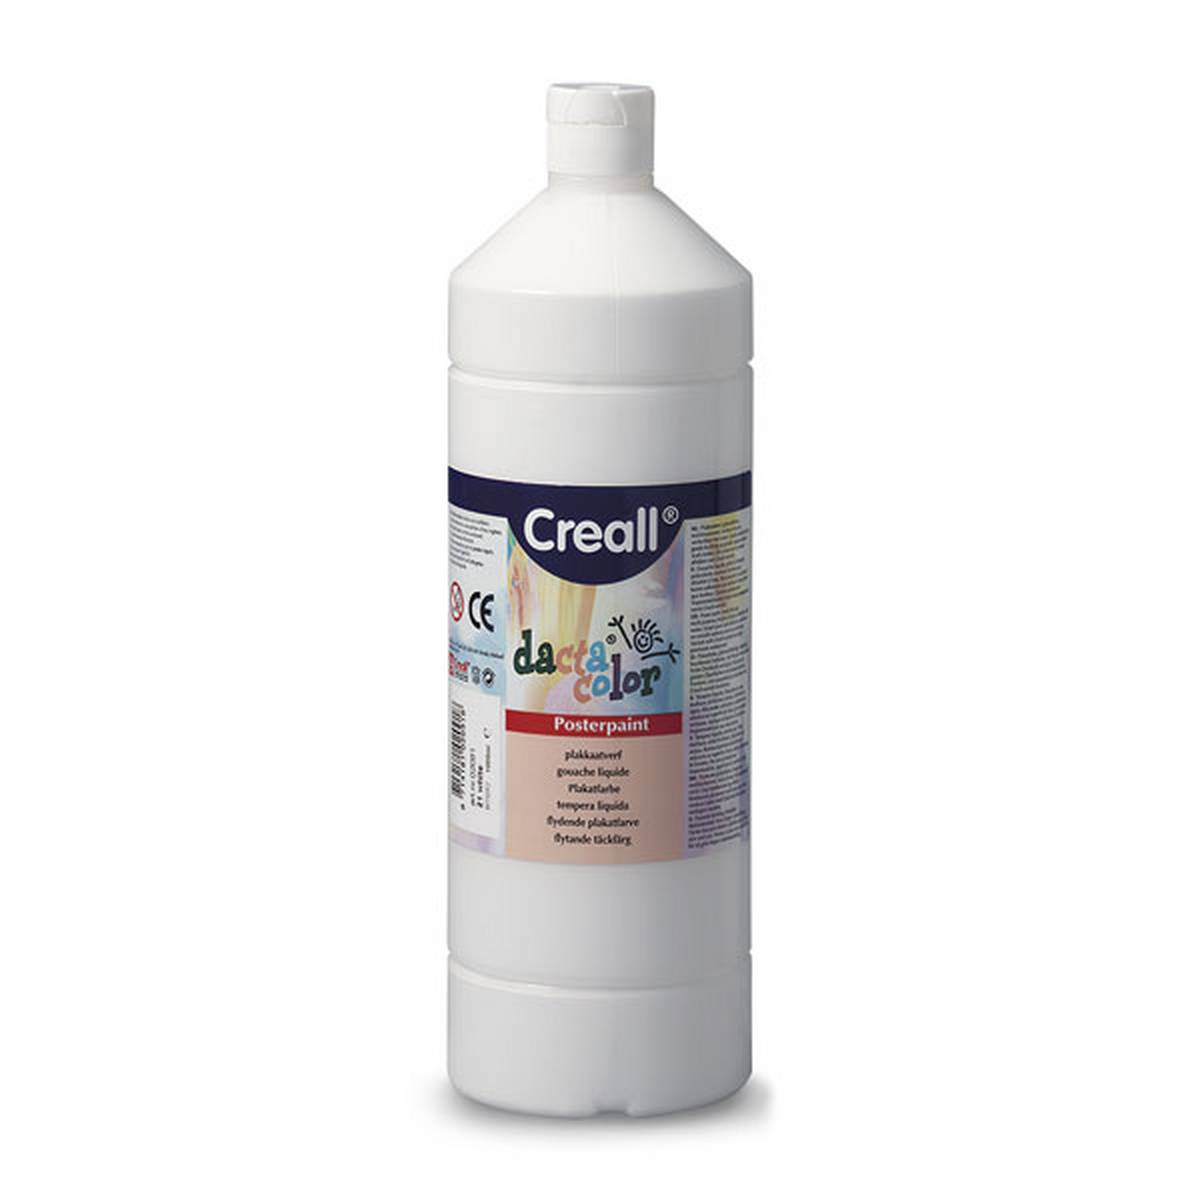 Creall 1 litre Bottle Poster Paint - White